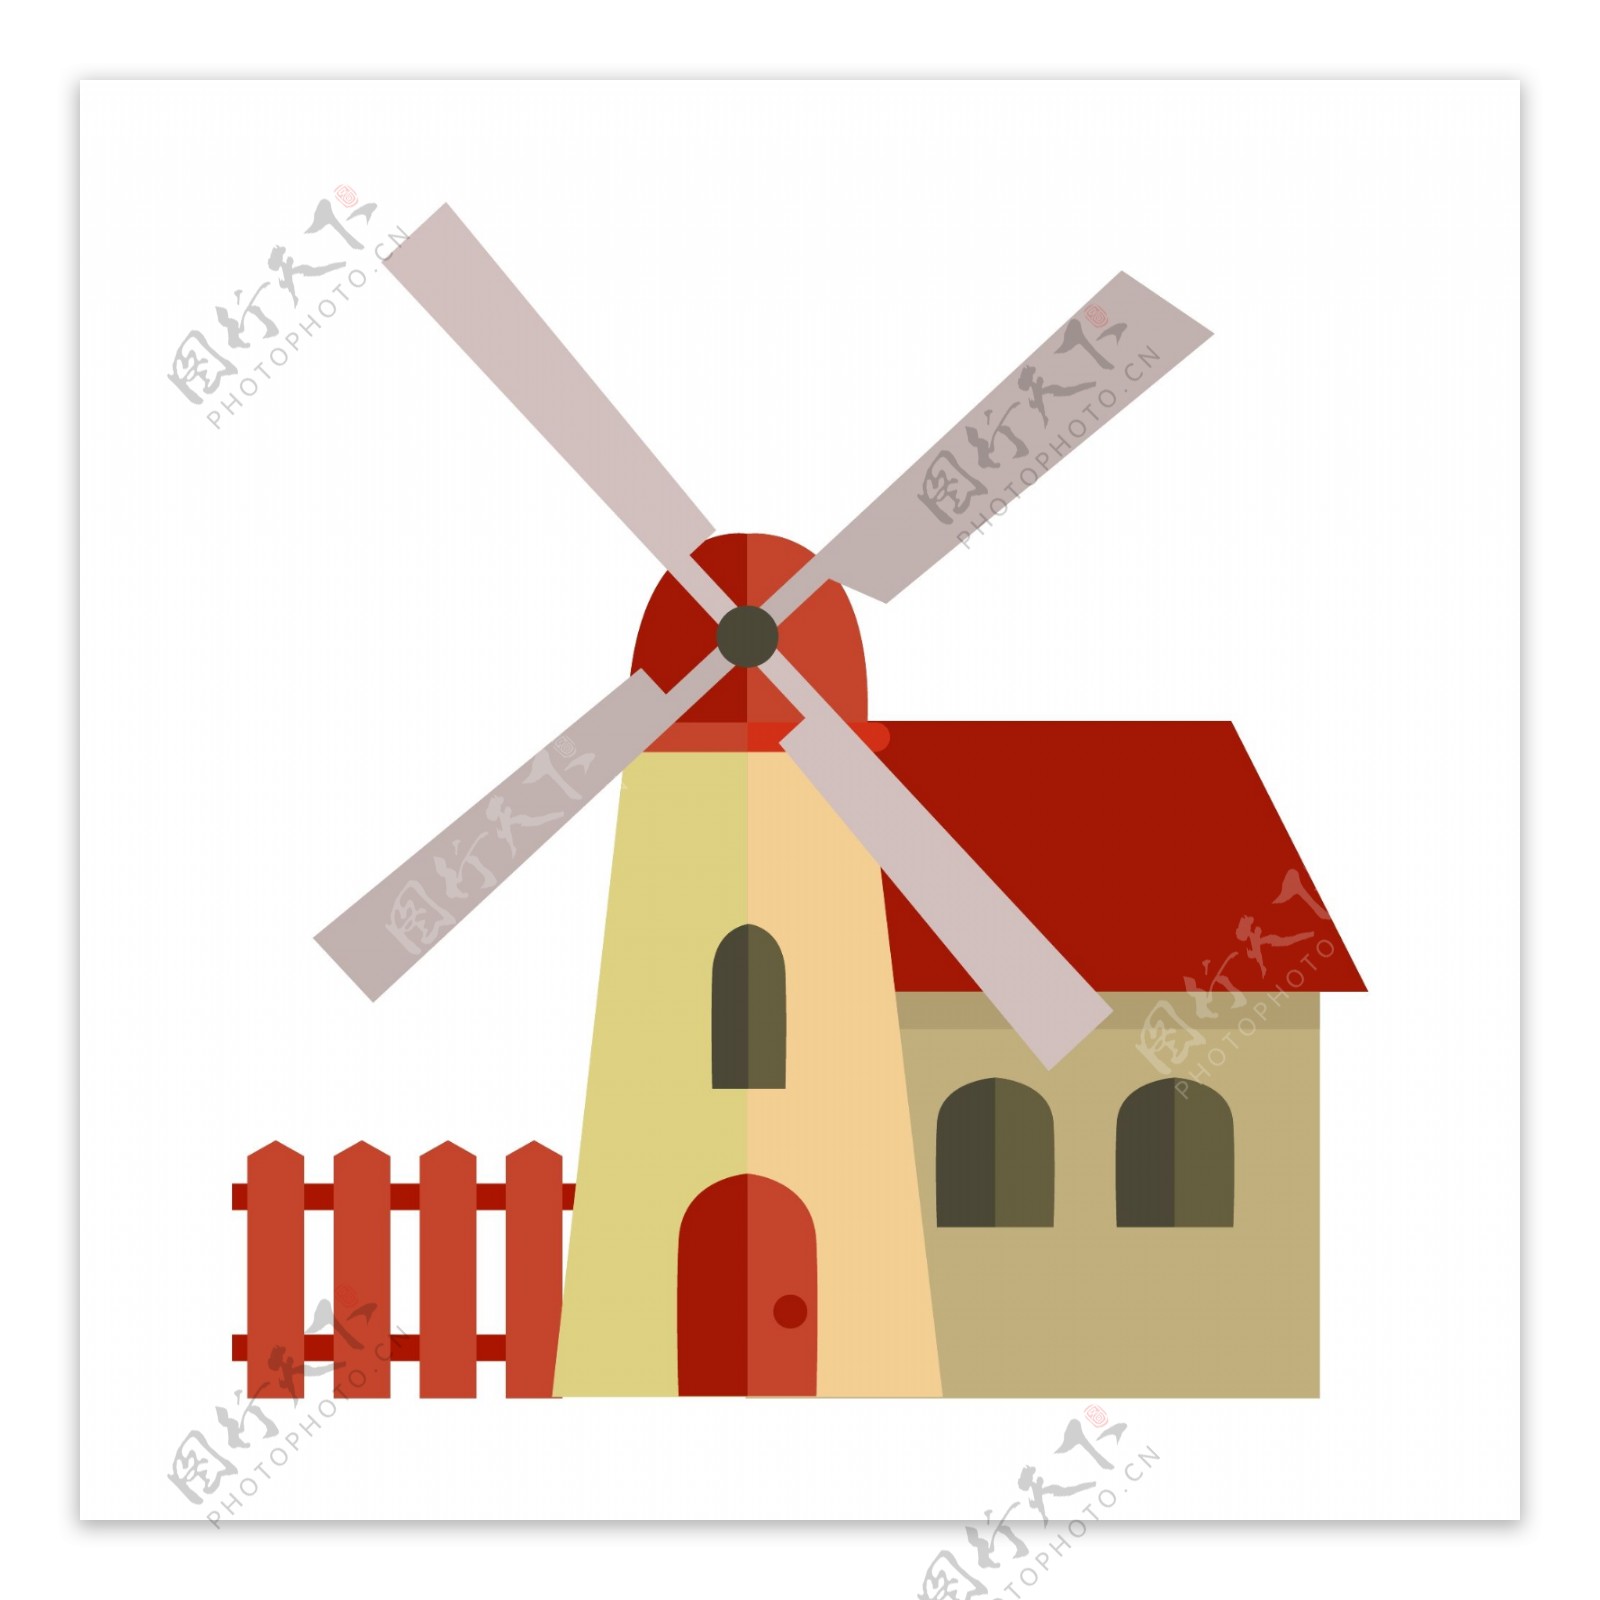 房子栅栏和风车插图